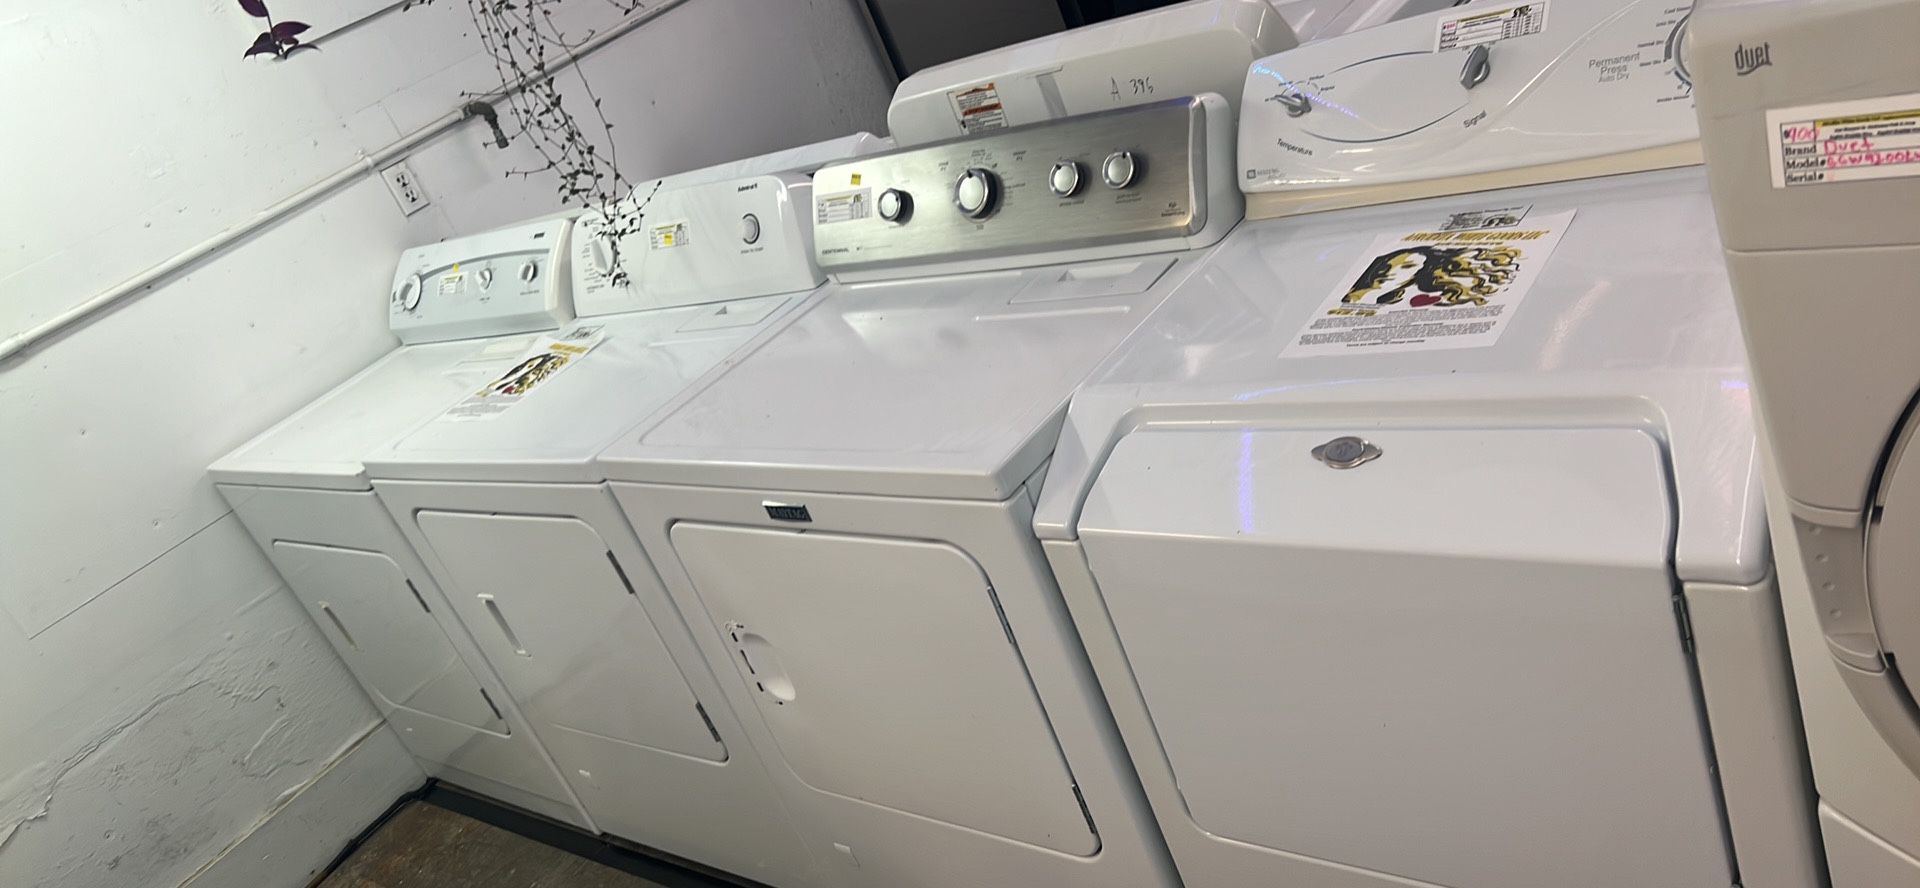 Dryers $200-$300